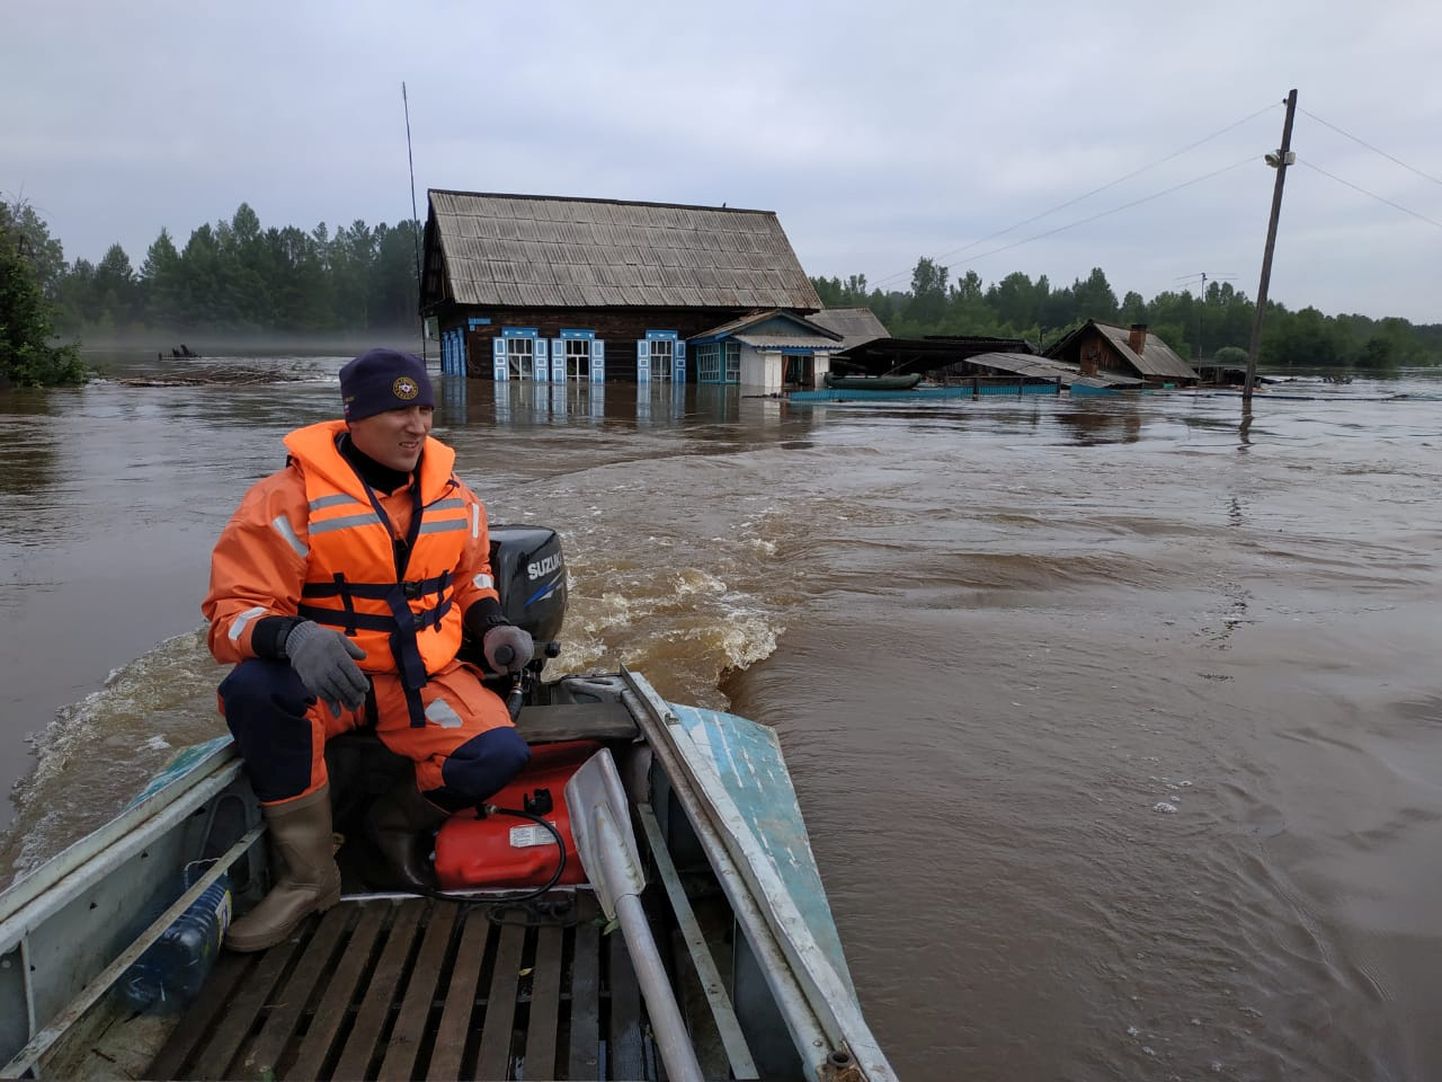 Vene eriolukordade ministeeriumi töötaja osalemas päästeoperatsioonil Irkutski oblastis.